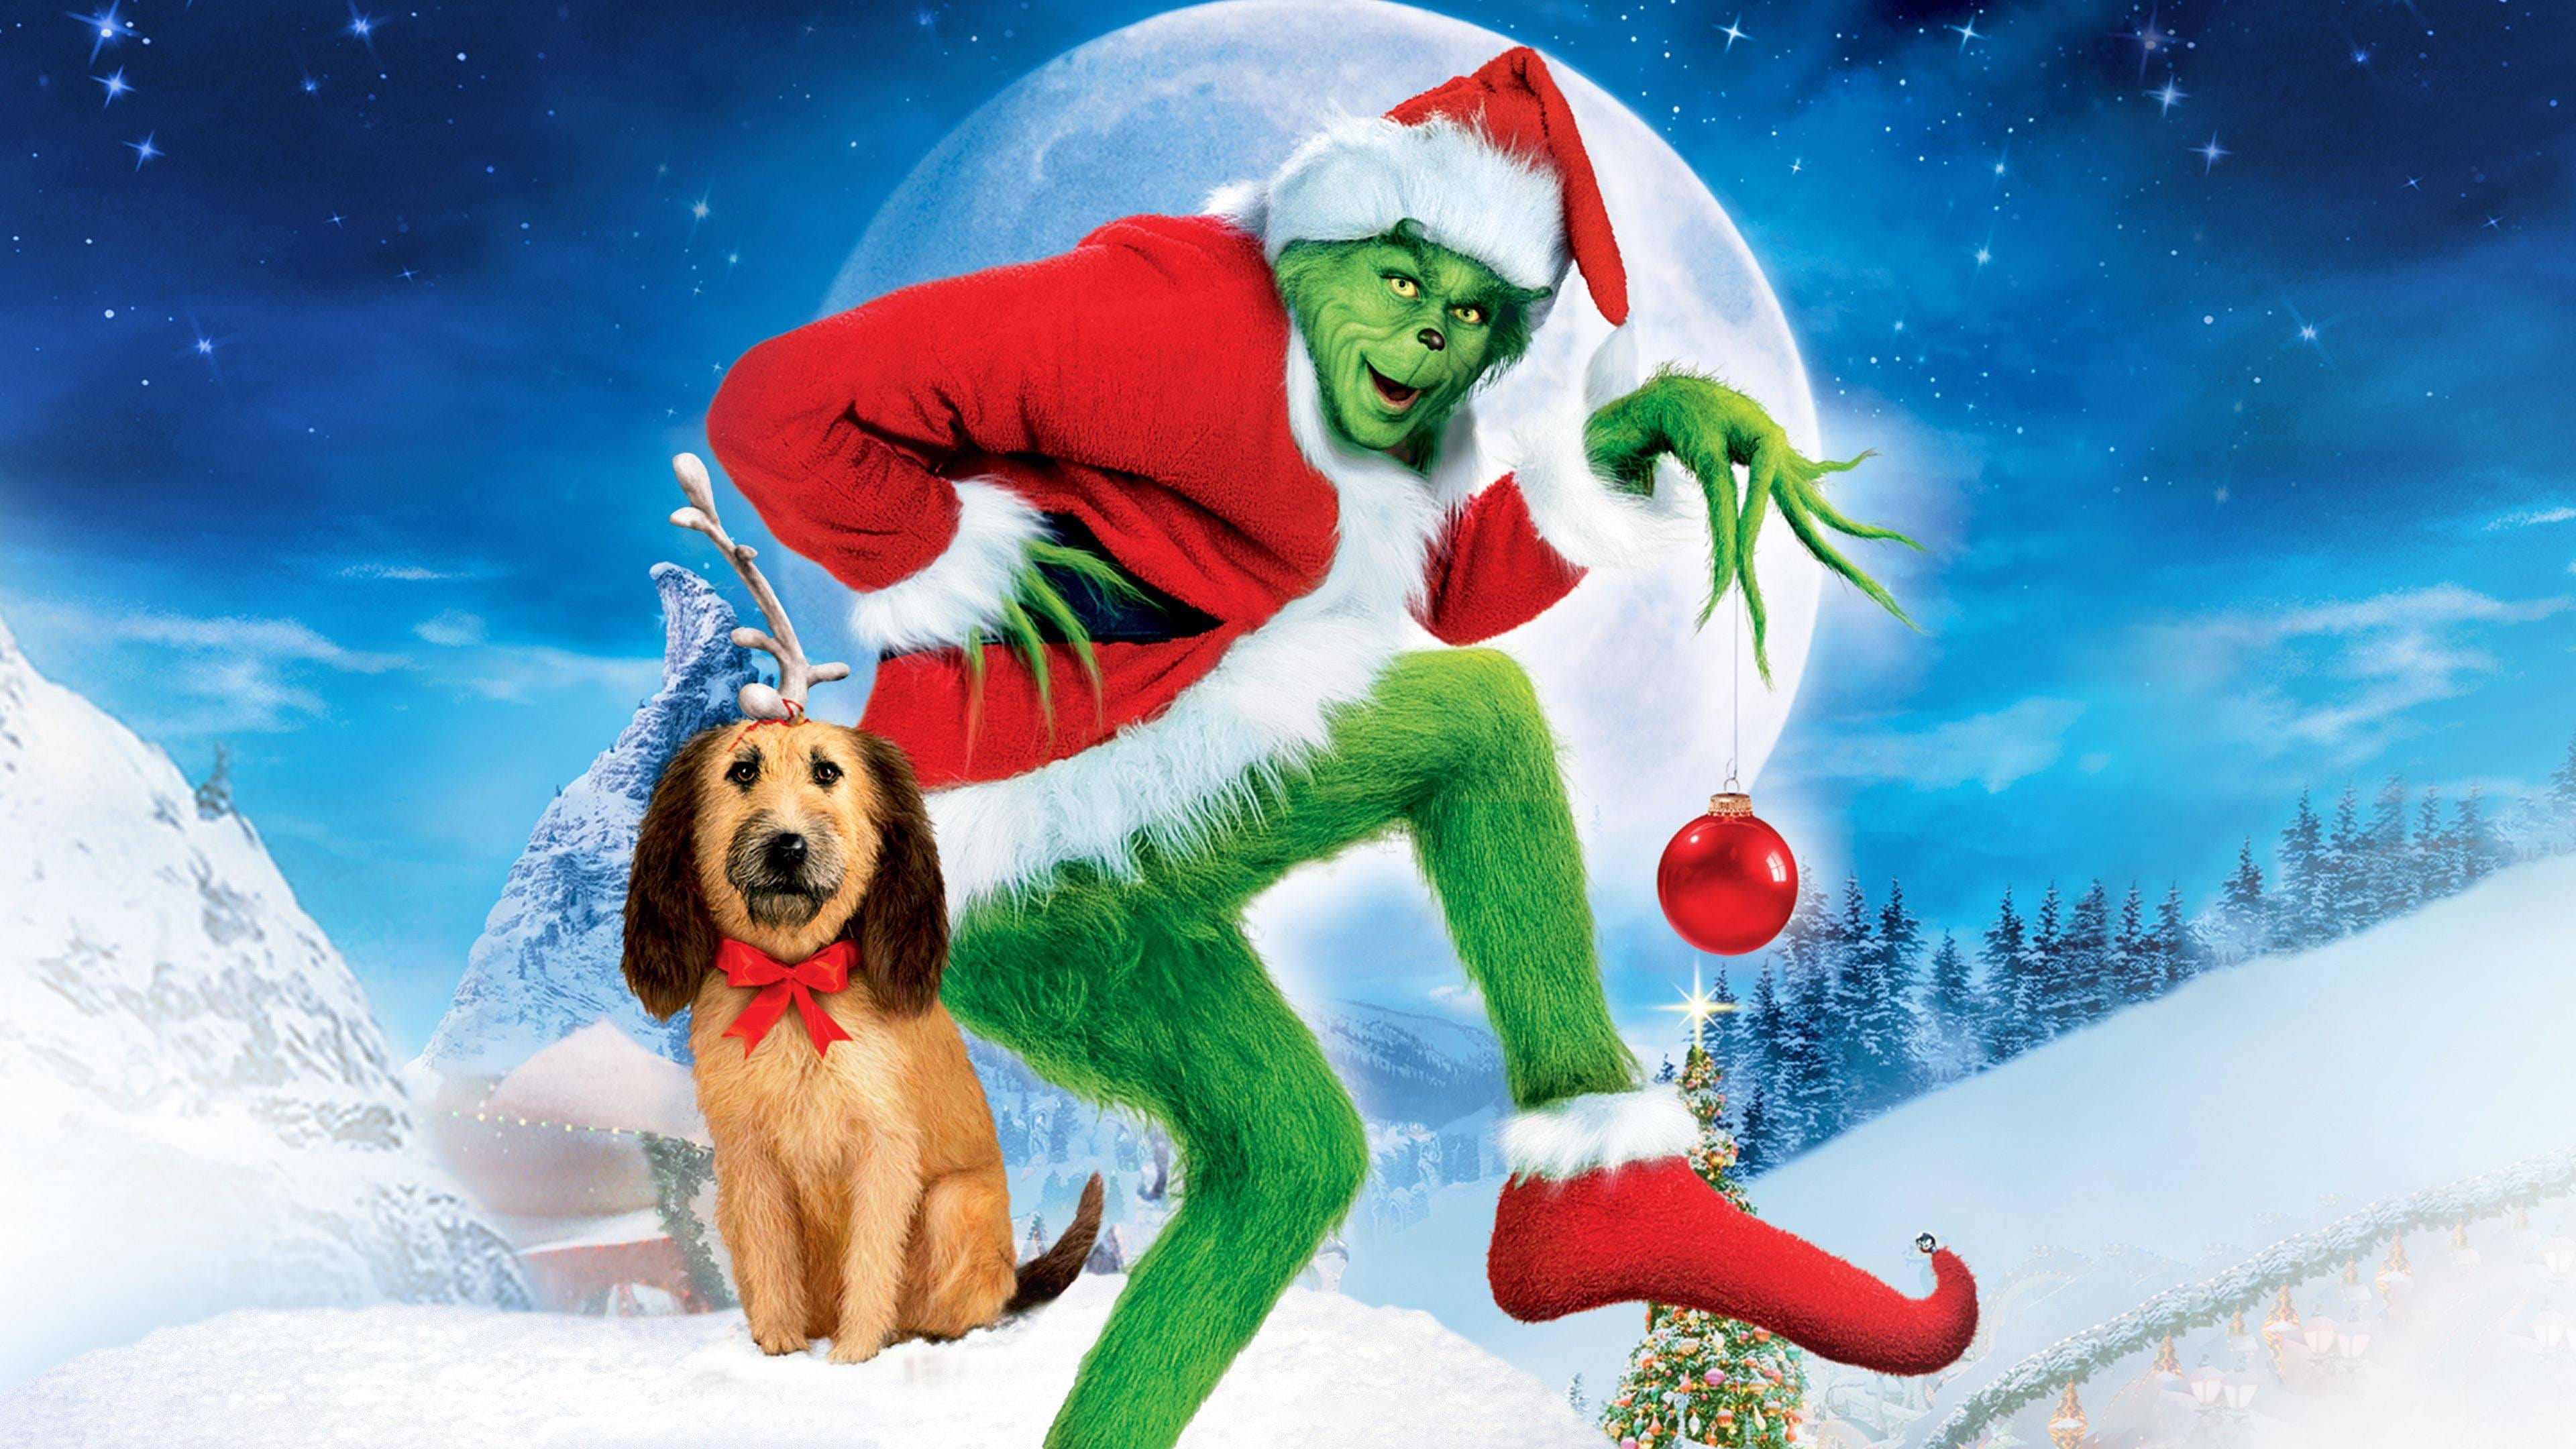 Poster Phim Grinch Đã Đánh Cắp Giáng Sinh Như Thế Nào (How the Grinch Stole Christmas)